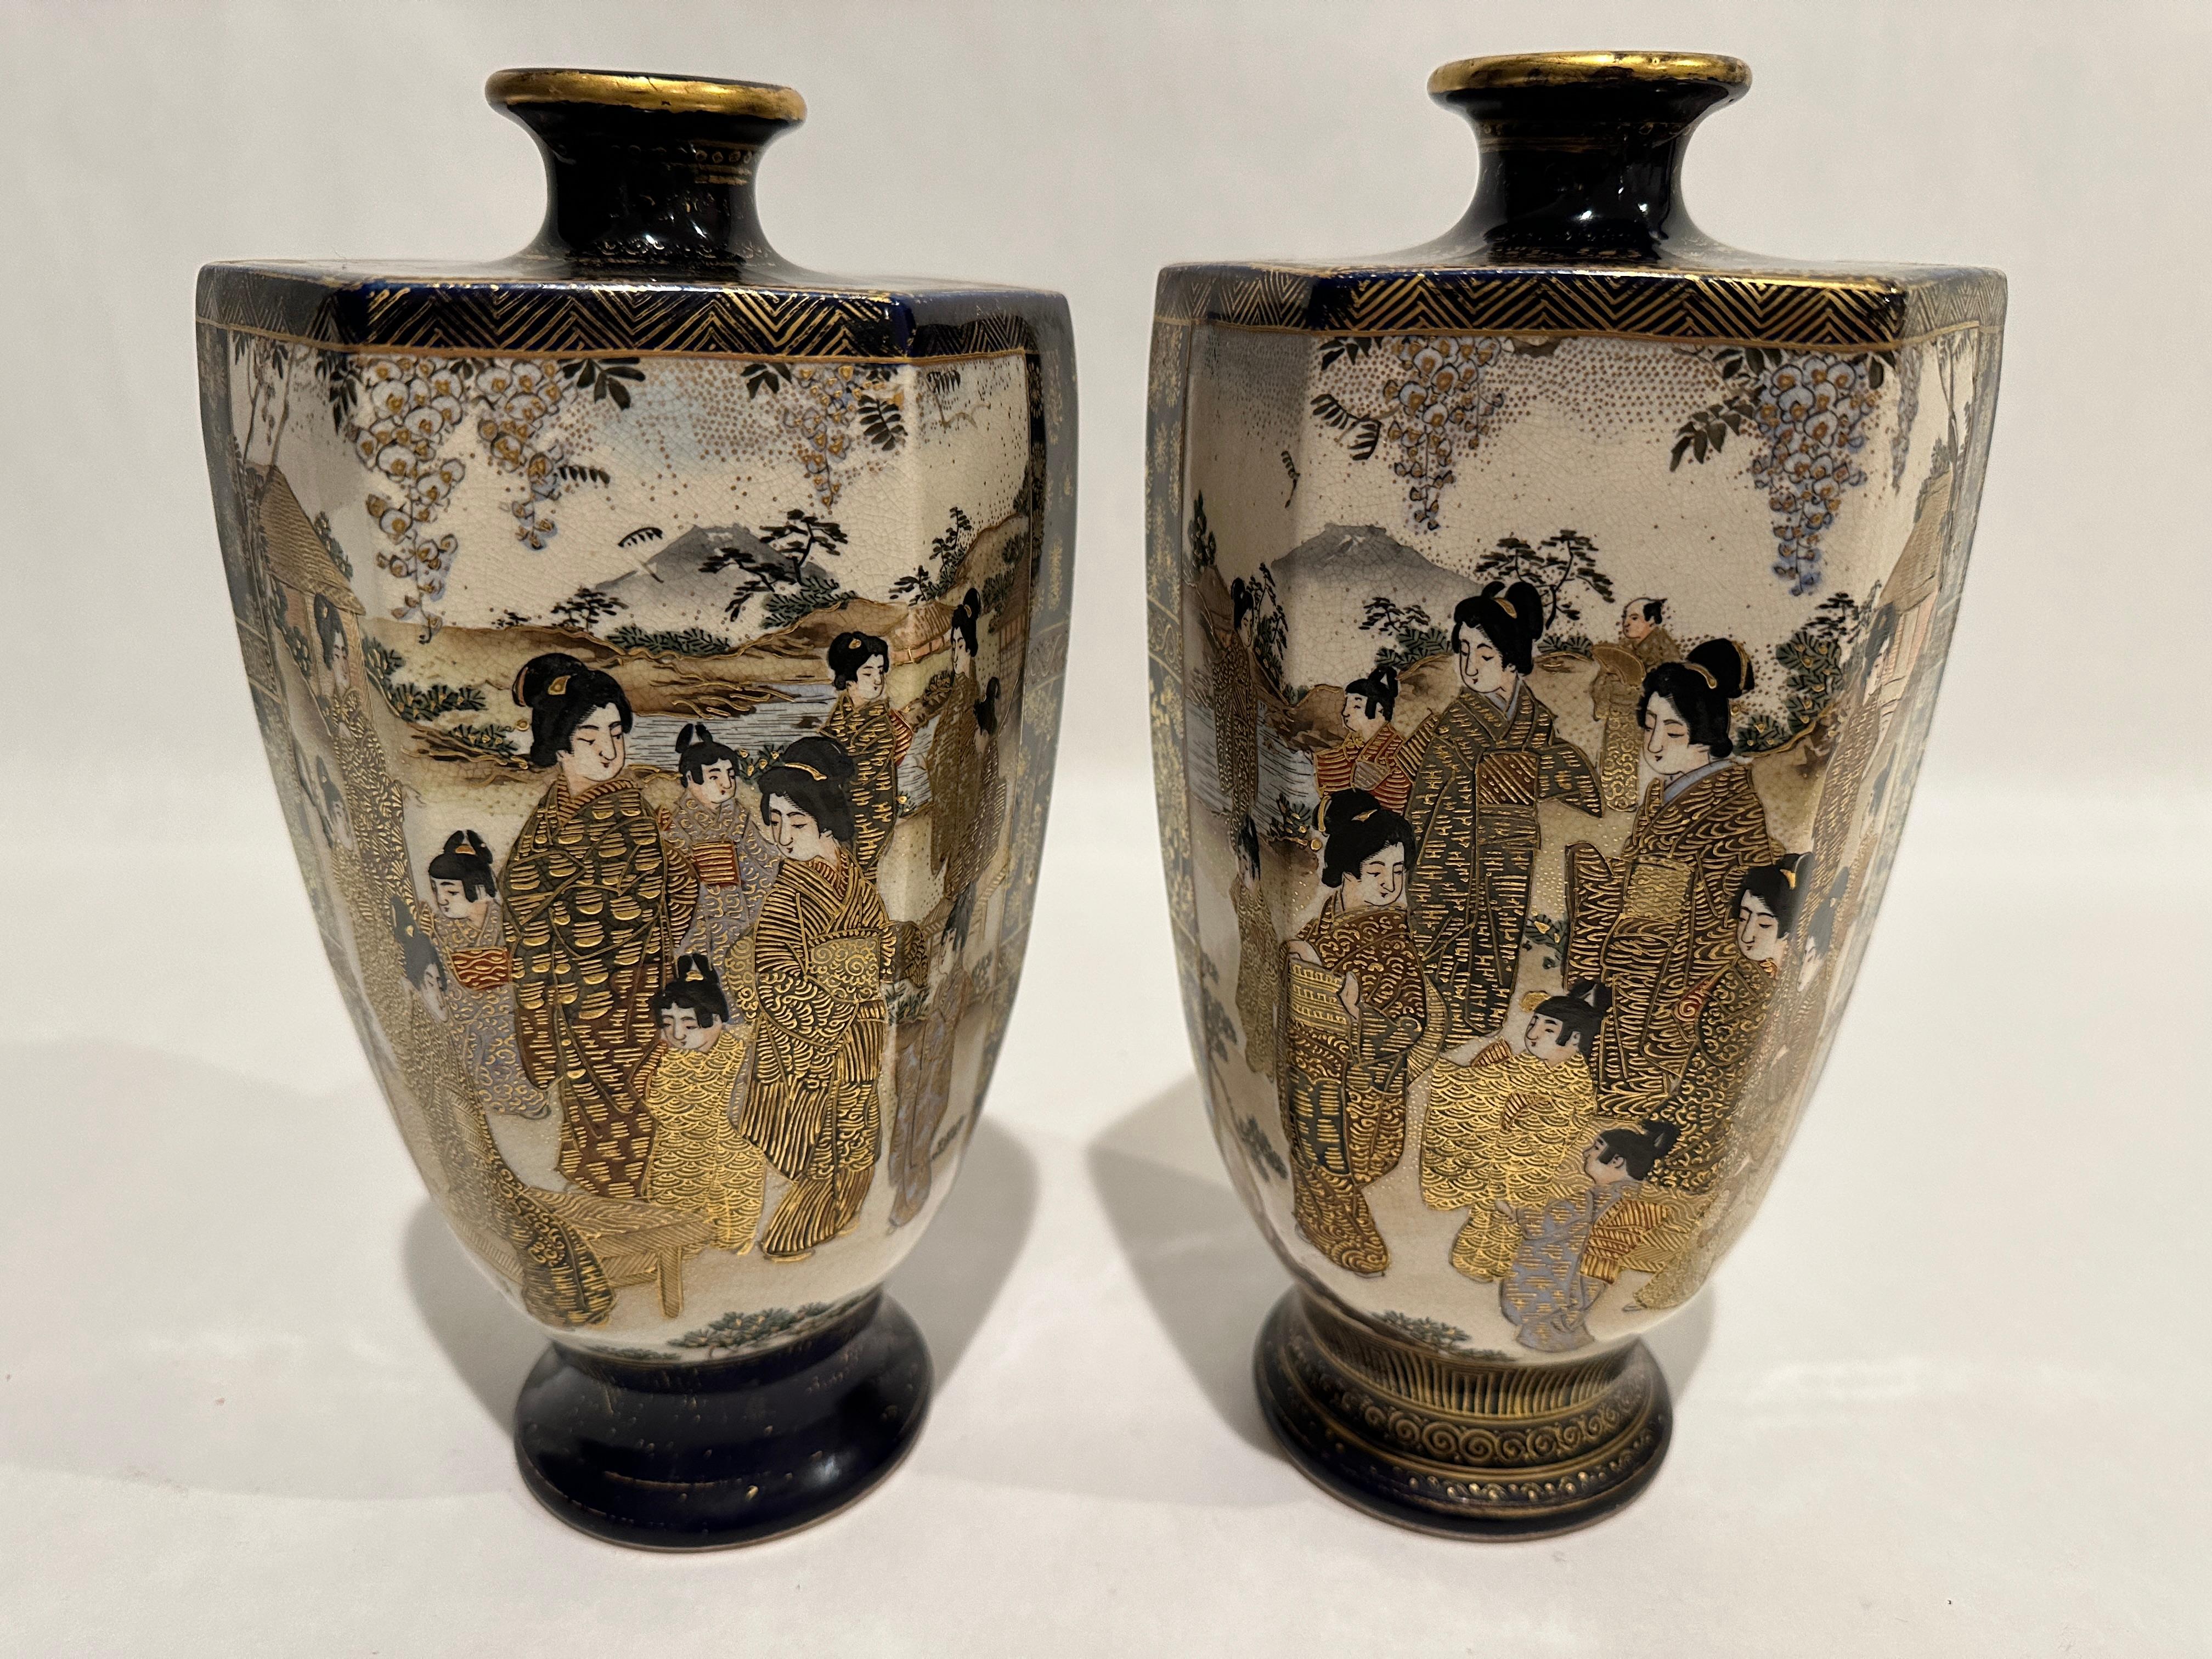 Il s'agit d'une paire de vases Satsuma japonais en faïence de très bonne qualité, magnifiquement décorés à la main et datant de la période Meiji, vers 1880.  Les vases ont une forme hexagonale élevée sur un pied circulaire, avec une épaule pointue